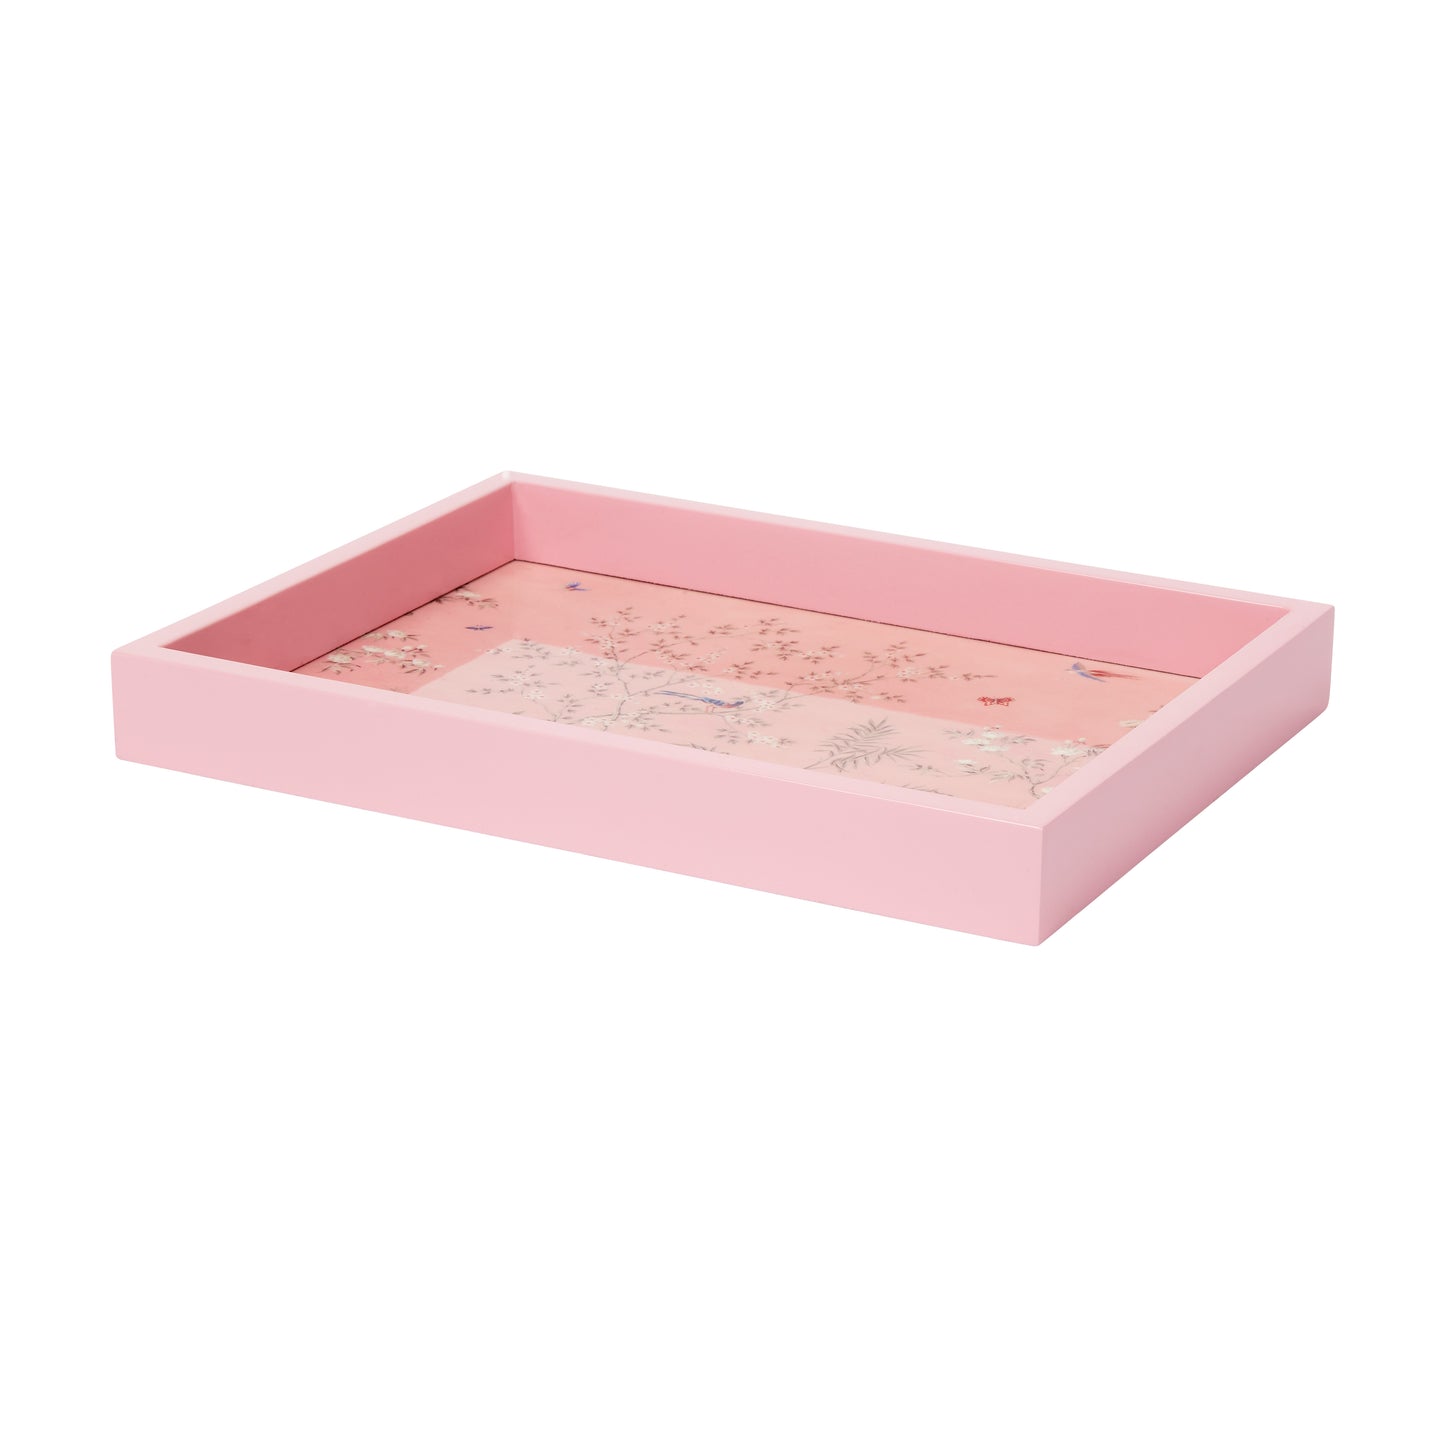 Pink Small Chinoiserie Tray - Addison Ross Ltd EU